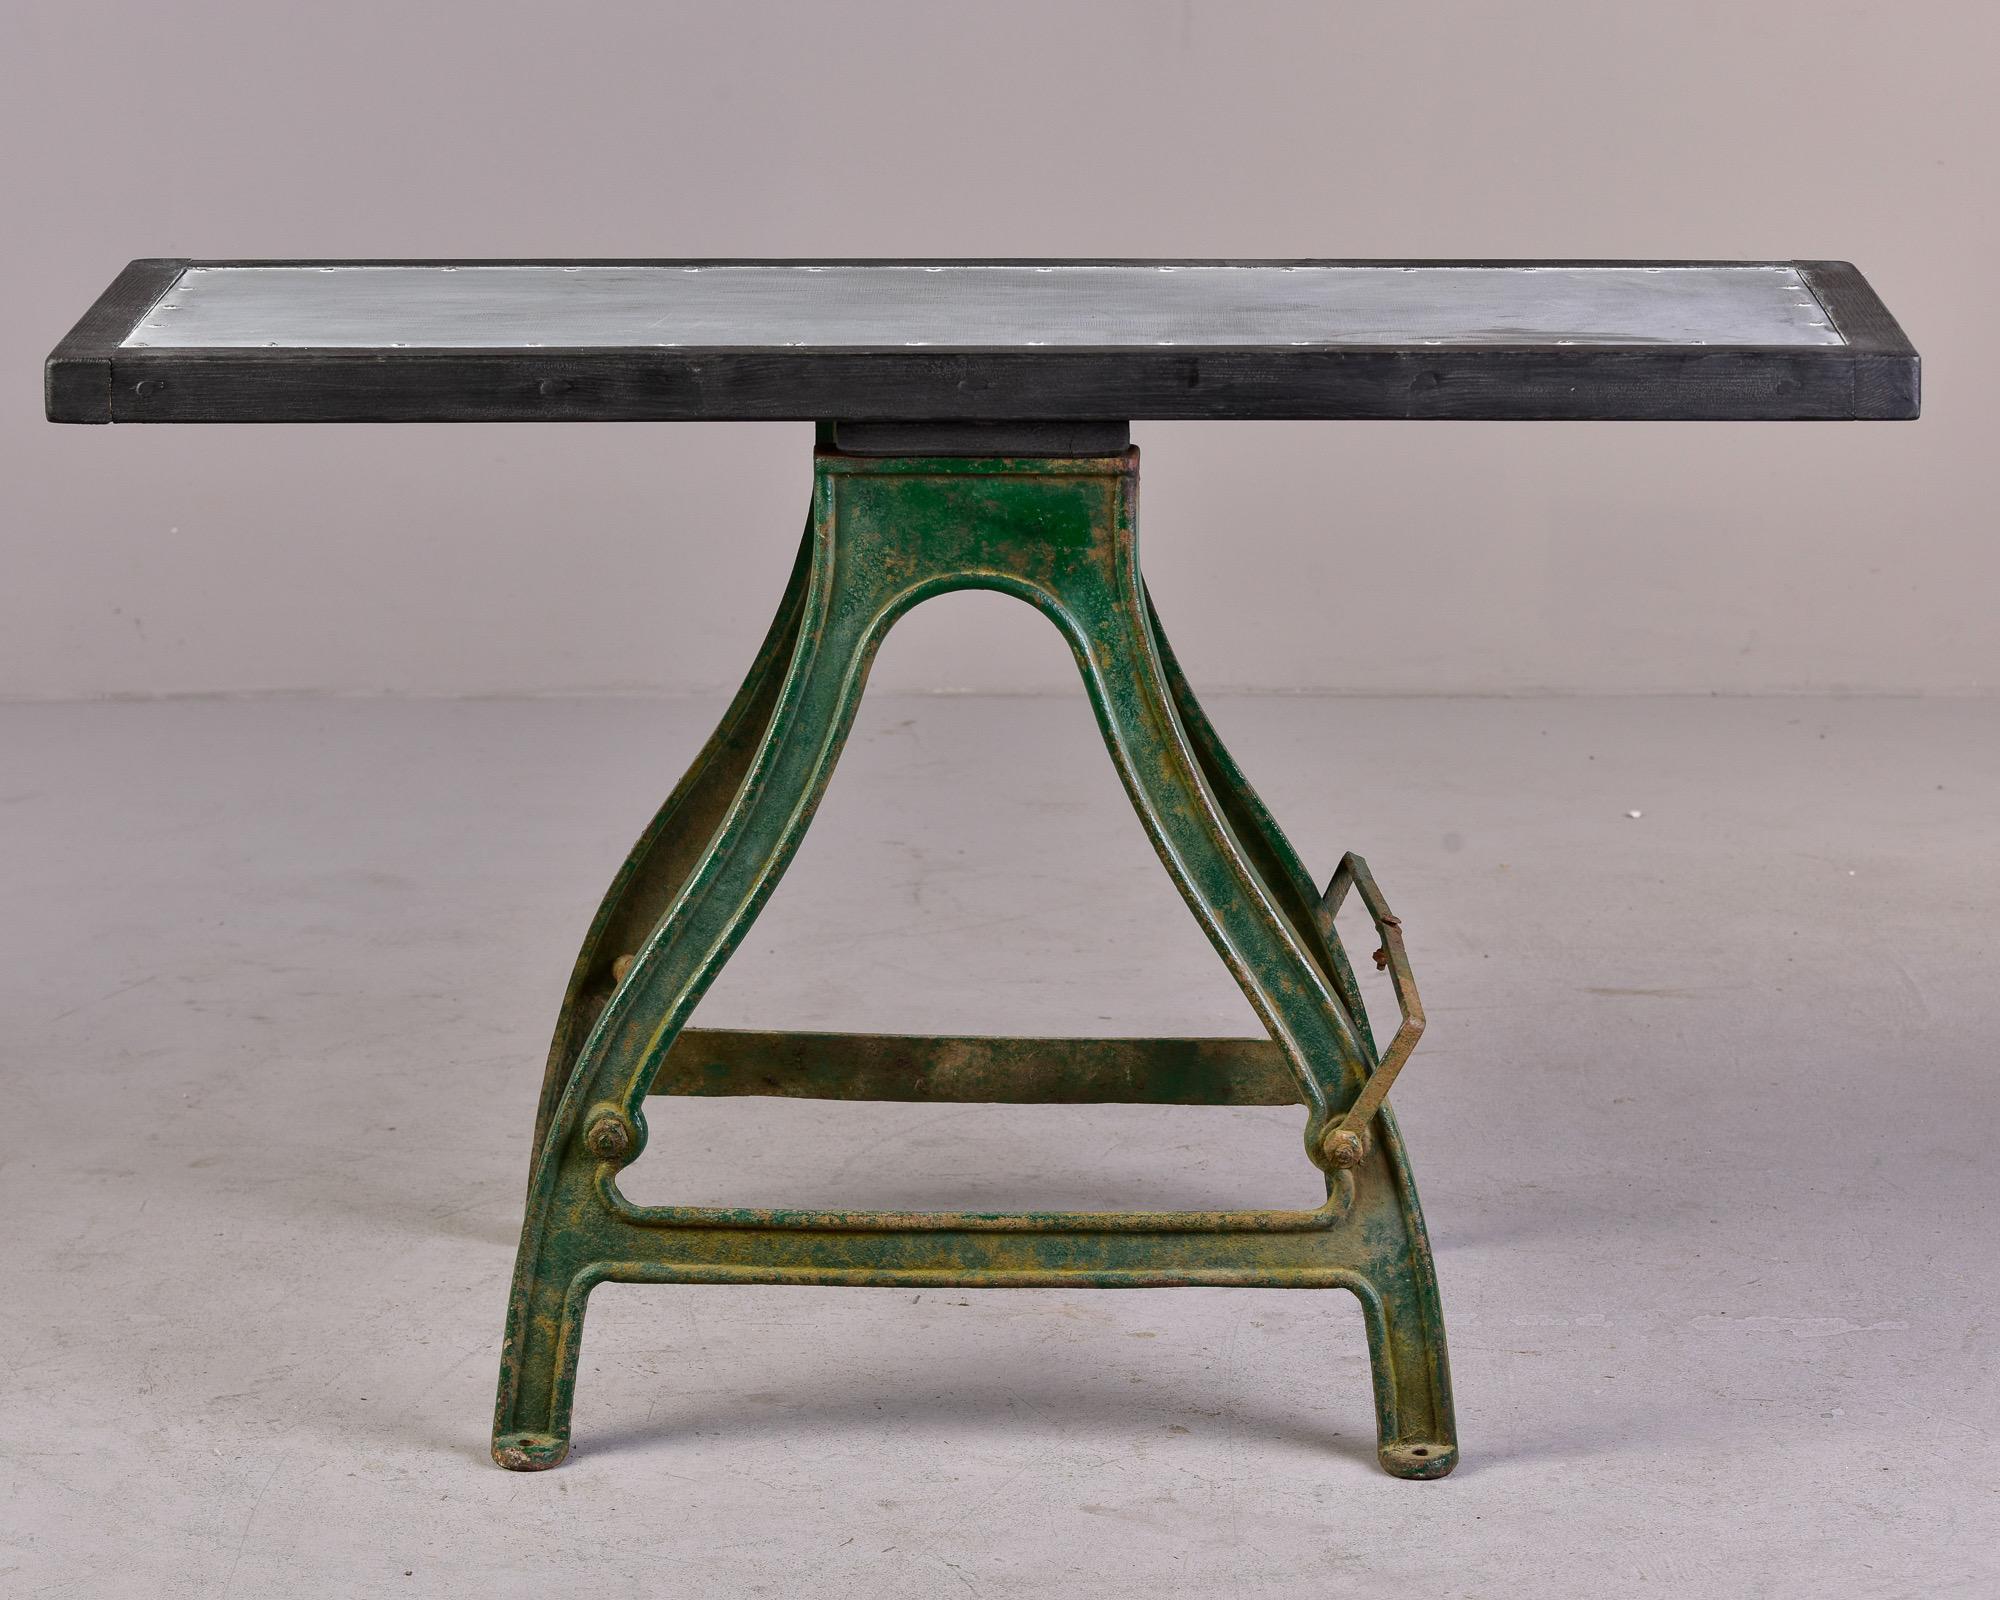 Dieser in England gefundene industrielle Arbeitstisch aus der Zeit um 1880 hat ein schweres Eisengestell mit grüner Originalfarbe, die etwas Rost und Patina aufweist. Die Tischplatte aus neuem Holz mit Zinküberzug macht diesen Tisch zu einer